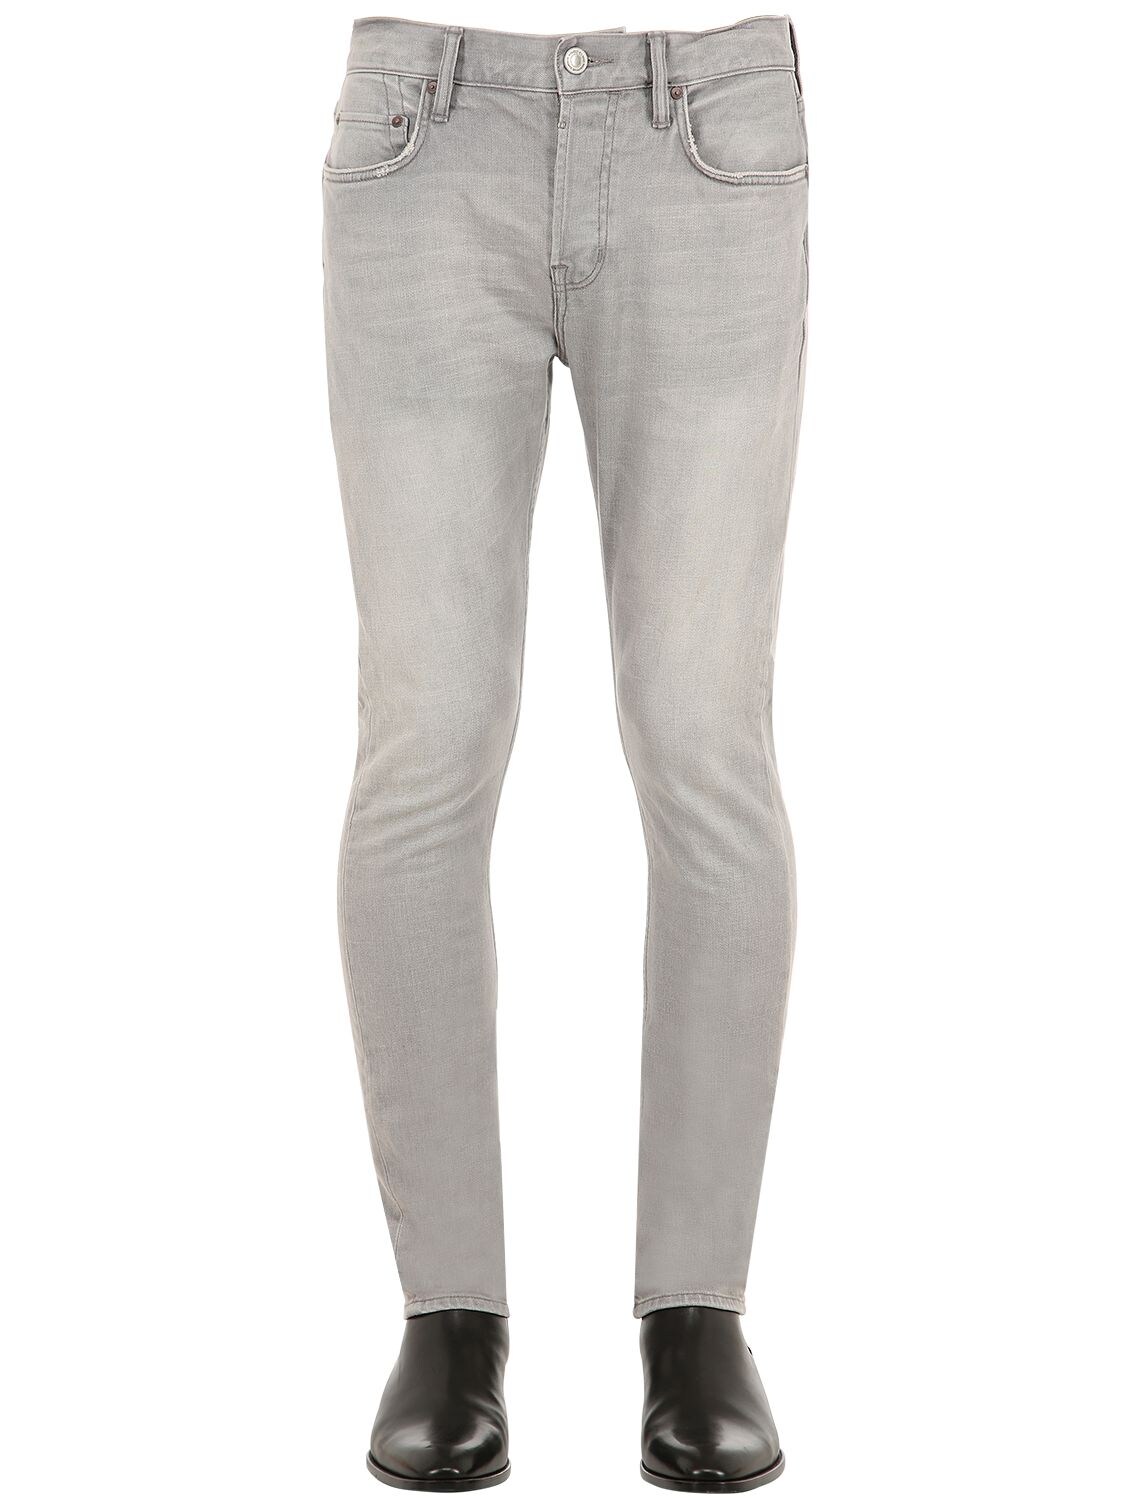 Allsaints Geary Skinny Cotton Denim Jeans In Grey